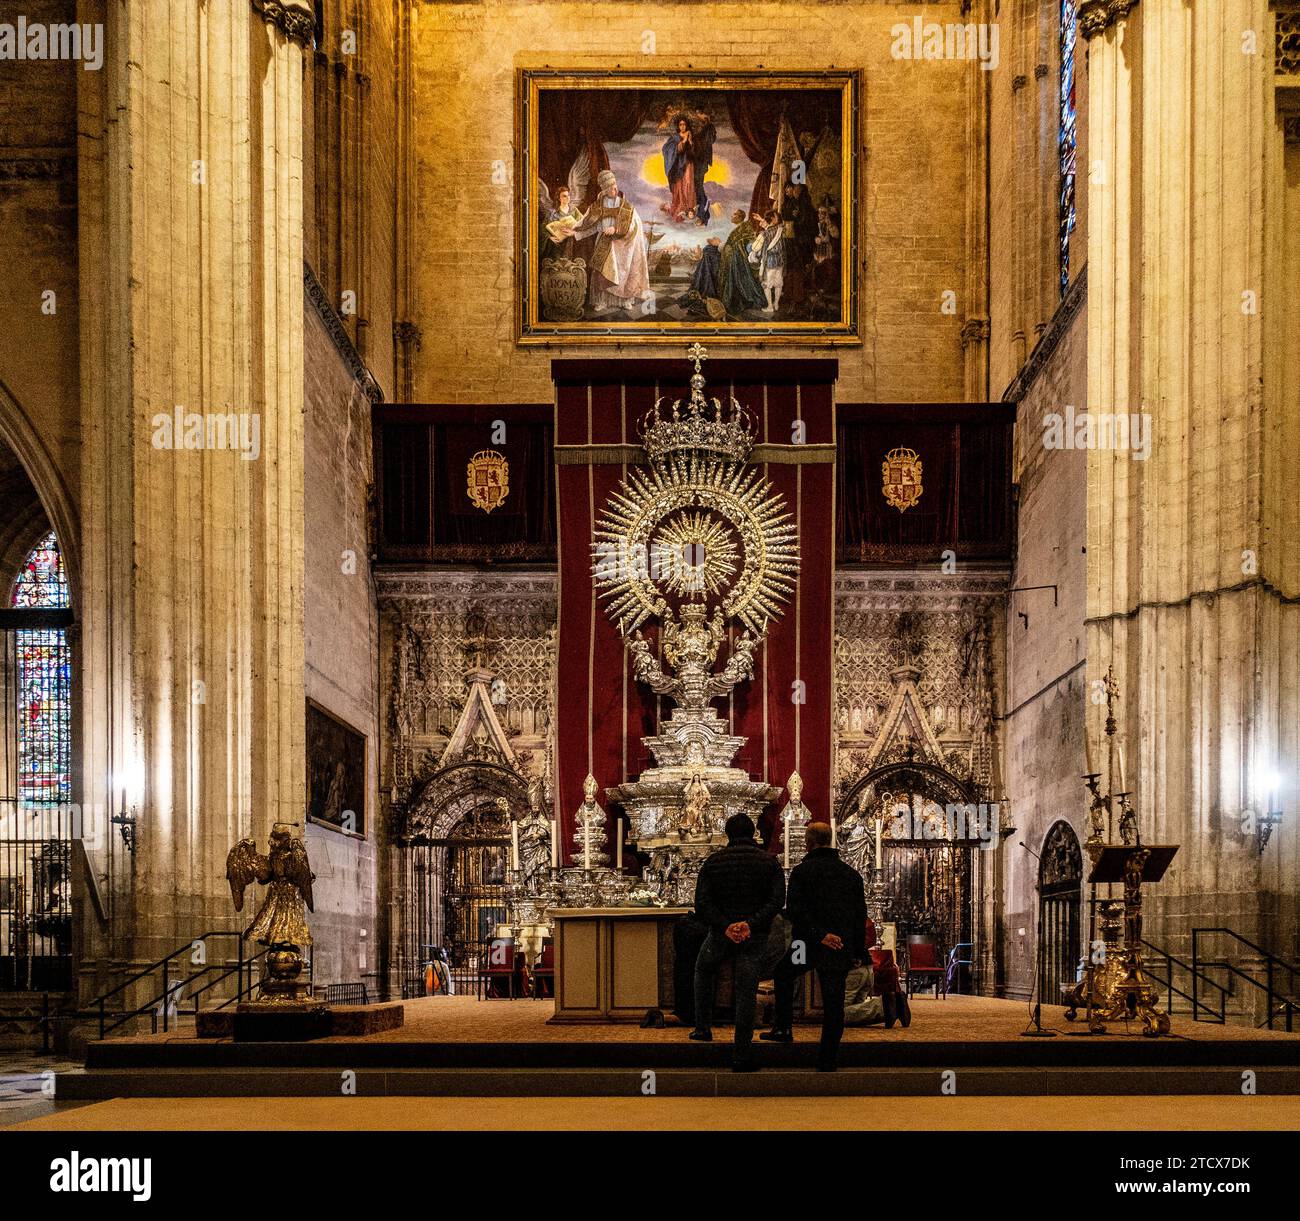 Due persone in contemplazione davanti alla pala d'altare ornata e al grande dipinto nella maestosa cornice della Cattedrale di Siviglia. Foto Stock